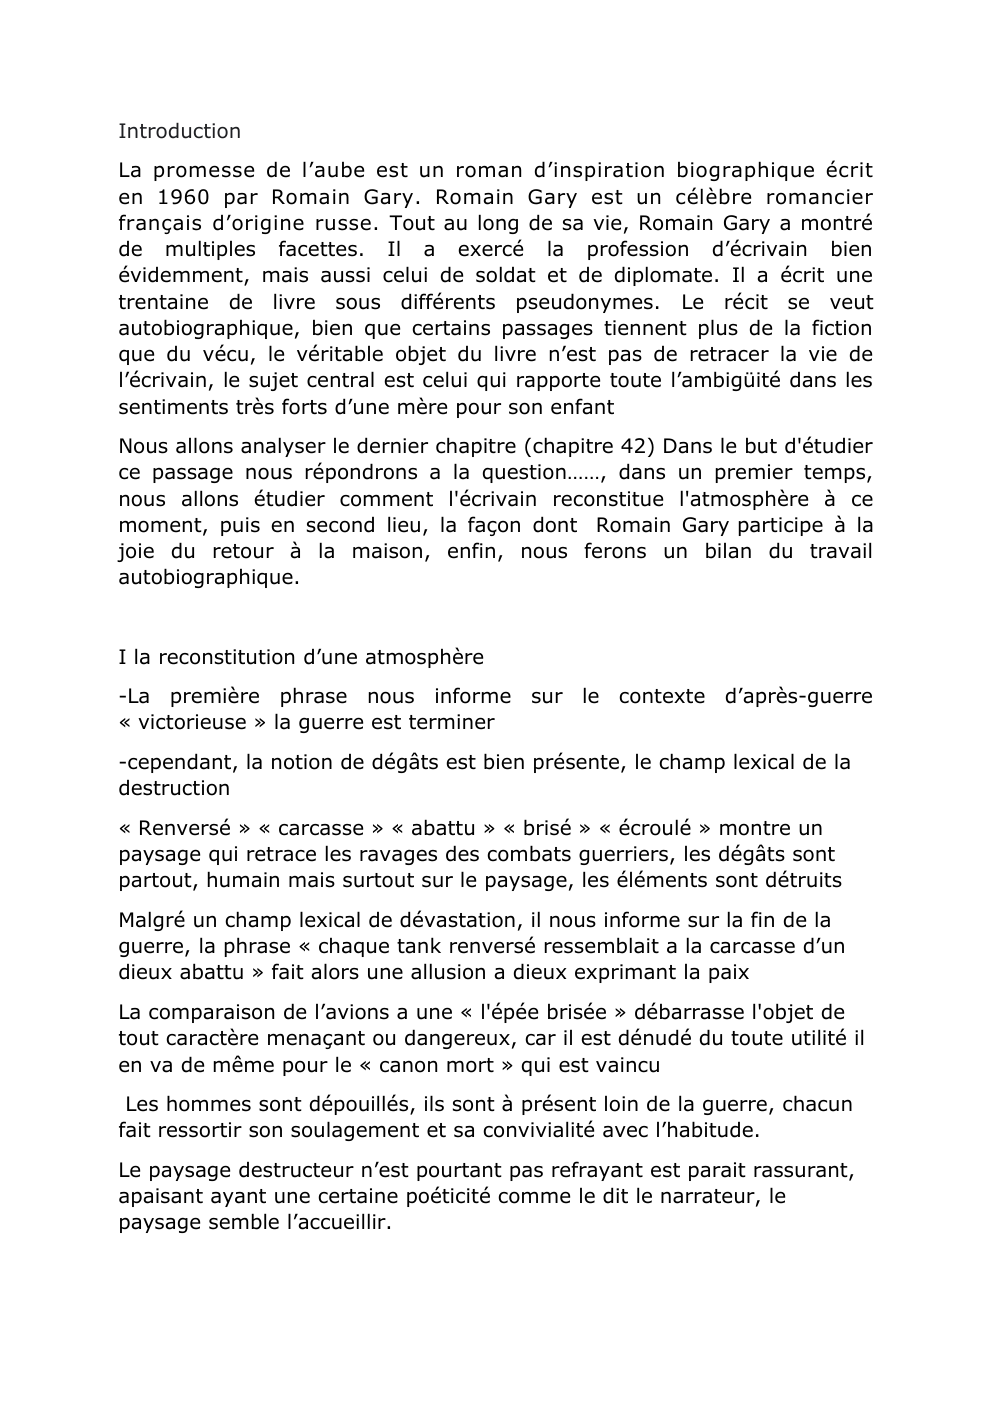 Prévisualisation du document Analyse linéaire la promesse de l'aube chap 42 Romain Gary